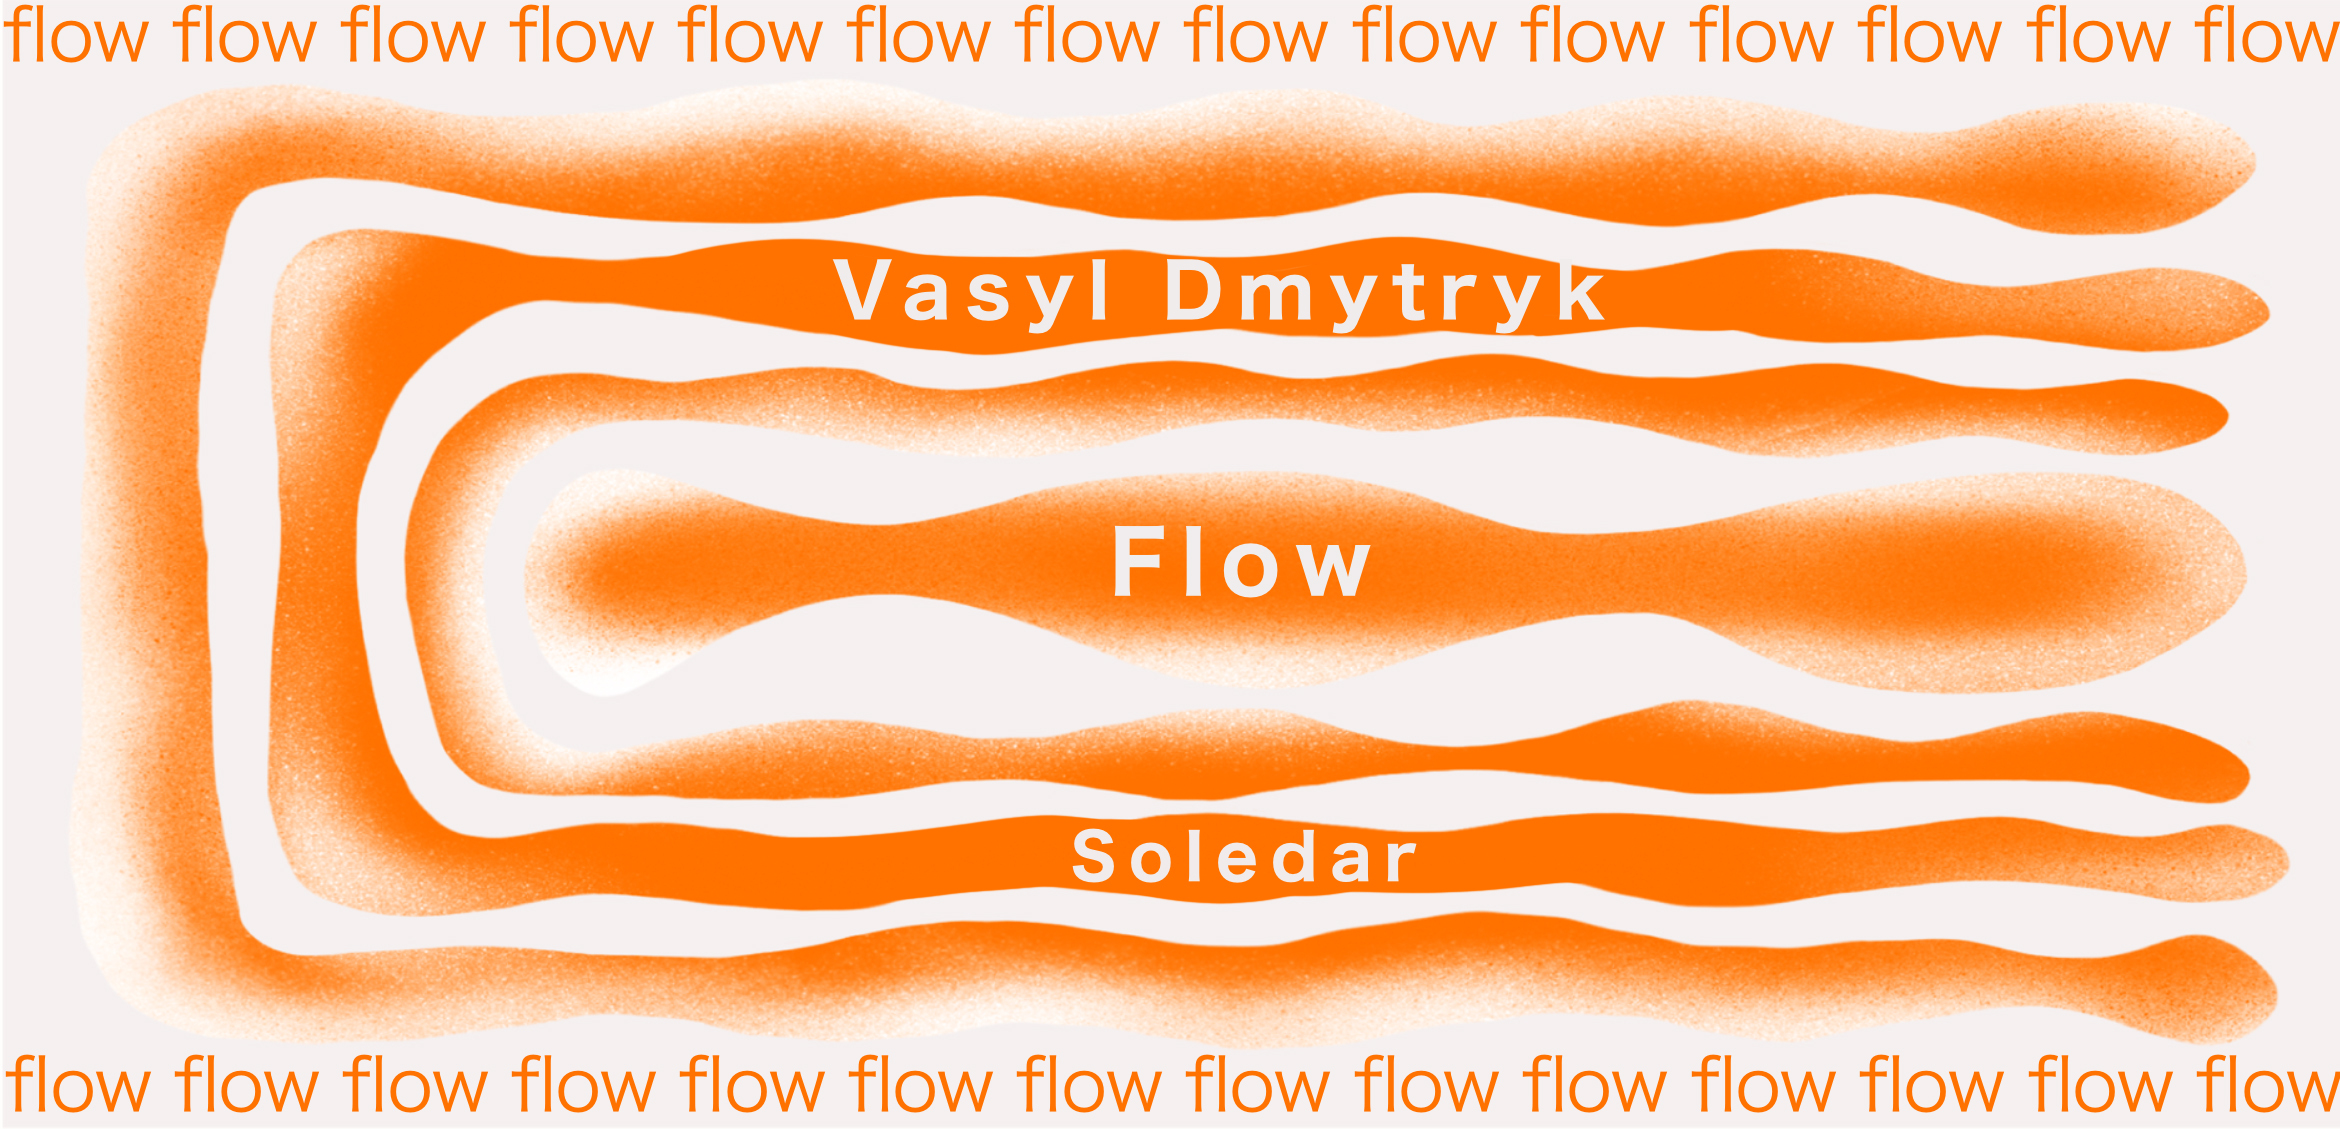 Vasyl Dmytryk’s sculpture Flows in Soledar